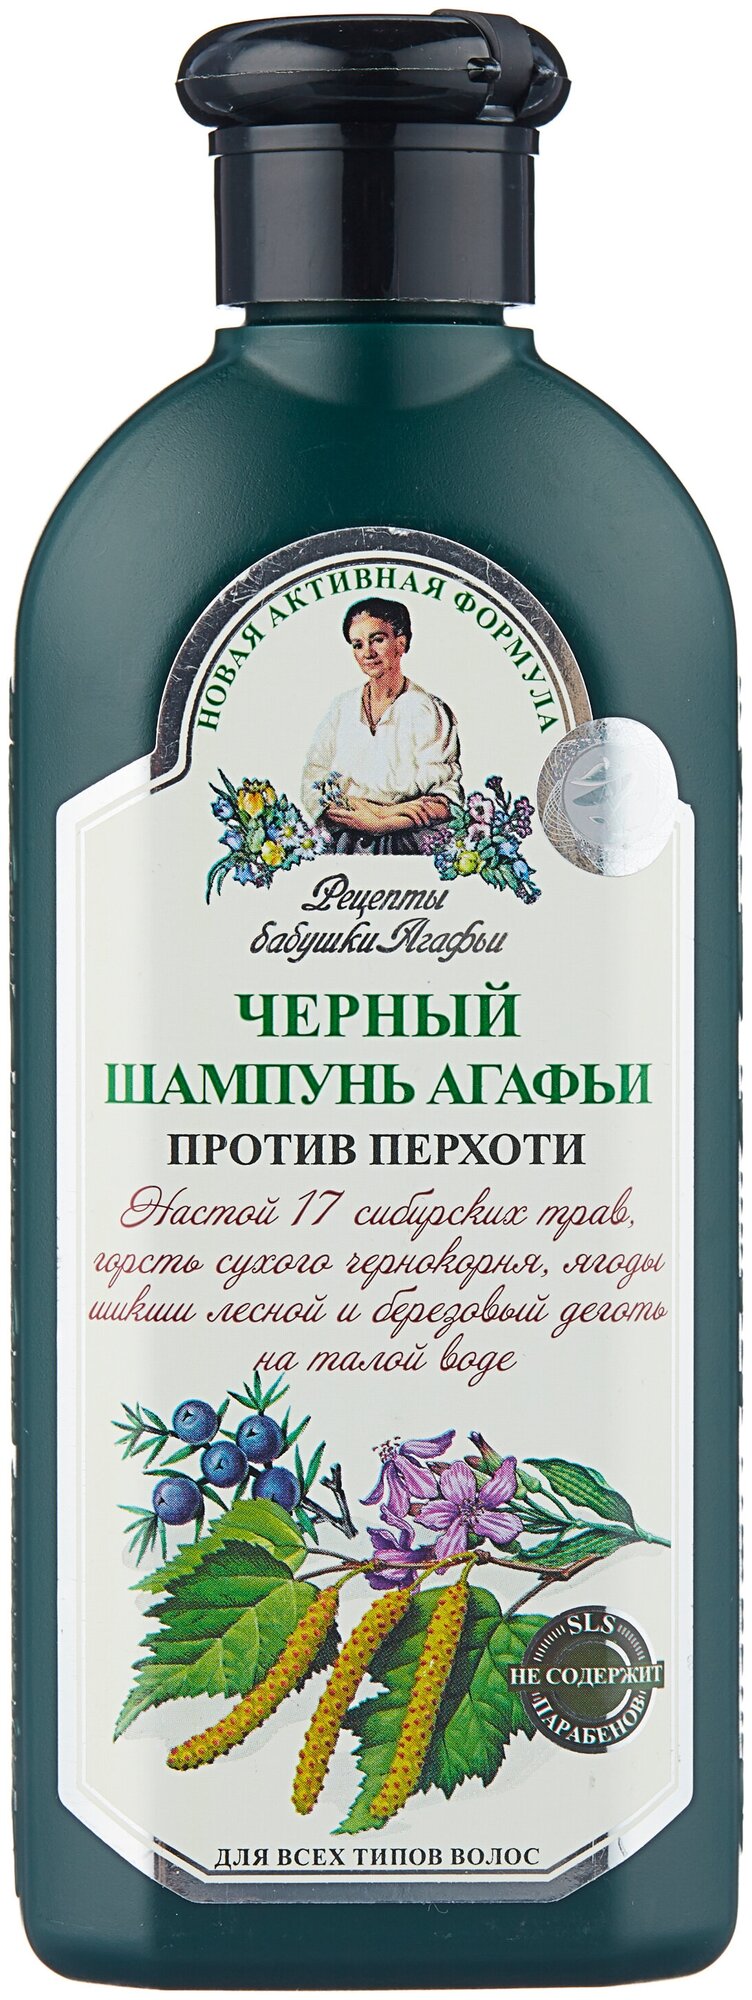 Рецепты бабушки Агафьи шампунь Агафьи Черный Против перхоти для всех типов волос 350 мл